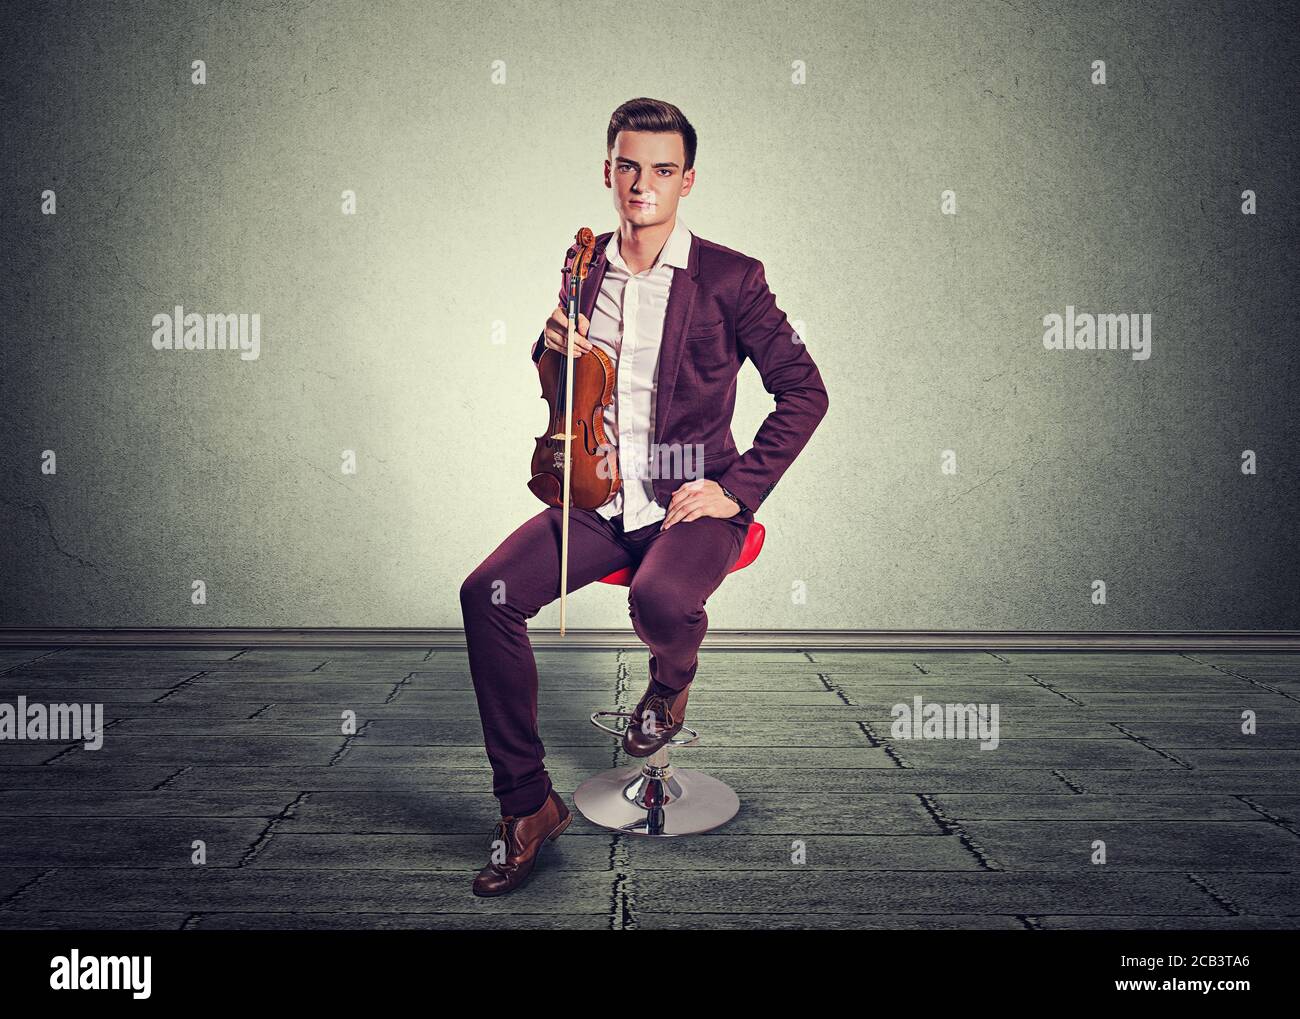 Jeune homme posant tenant un violon moderne et un bâton de violon assis sur un rouge dans la chambre avec un mur et un sol gris. Modèle vertical en bordeaux vineux Banque D'Images